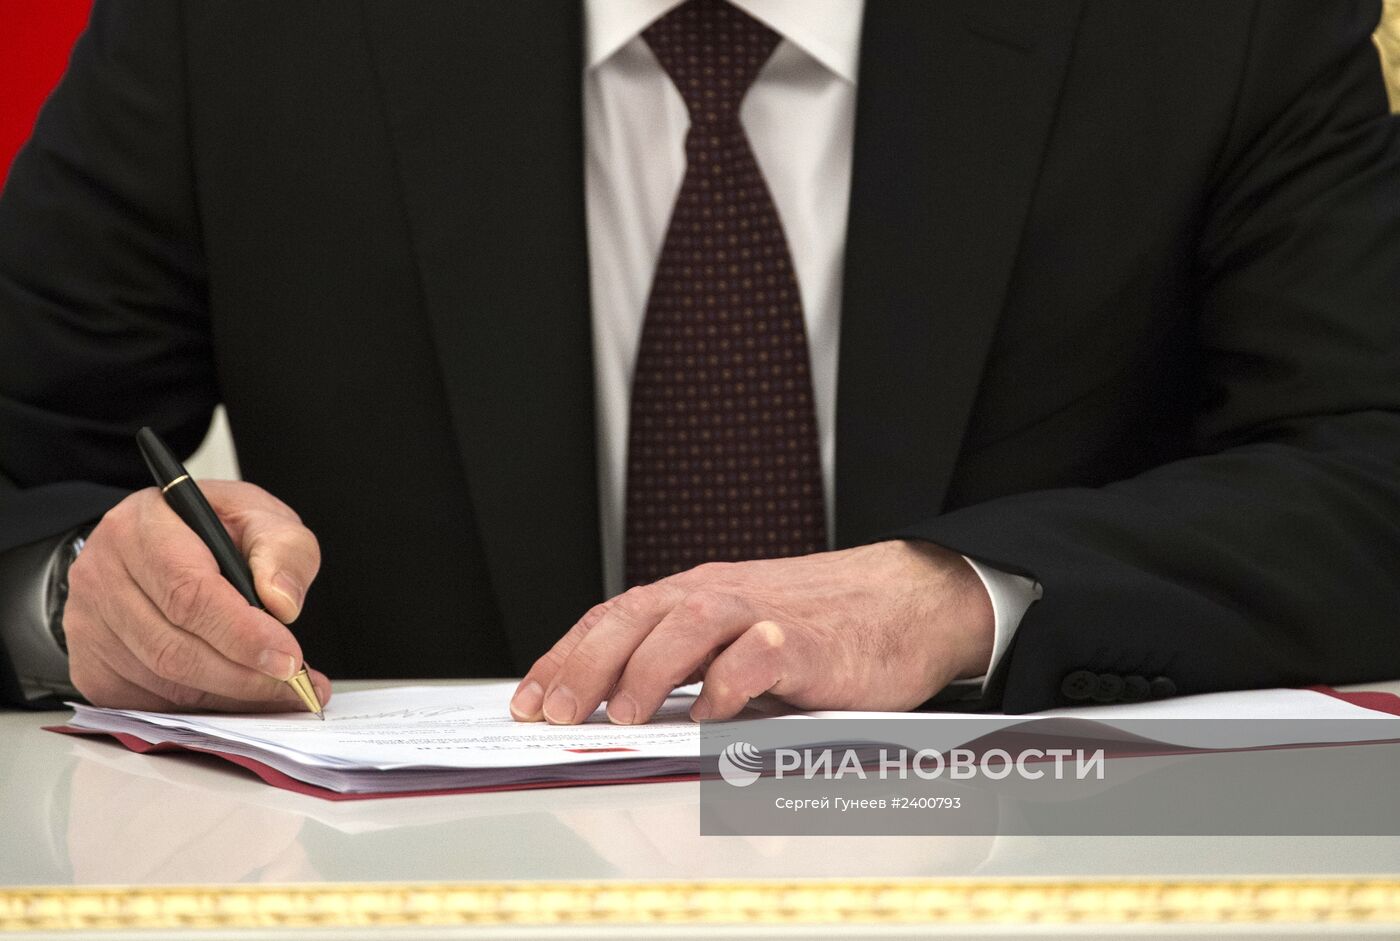 В.Путин подписал Указ об образовании Крымского Федерального округа РФ